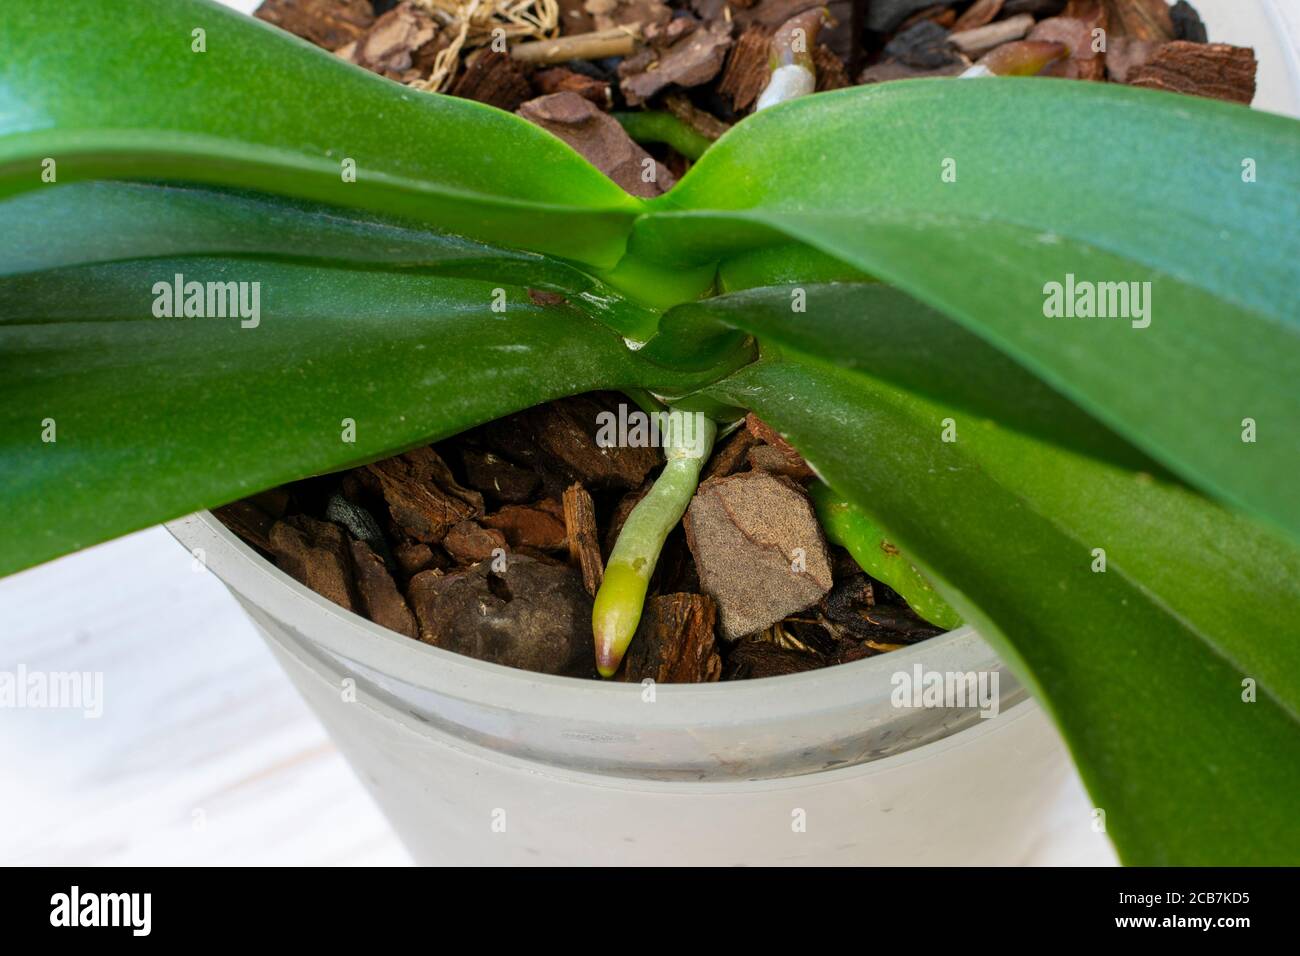 Orchidea sviluppa nuove radici giovani, radici nella fase attiva della crescita. Foto Stock